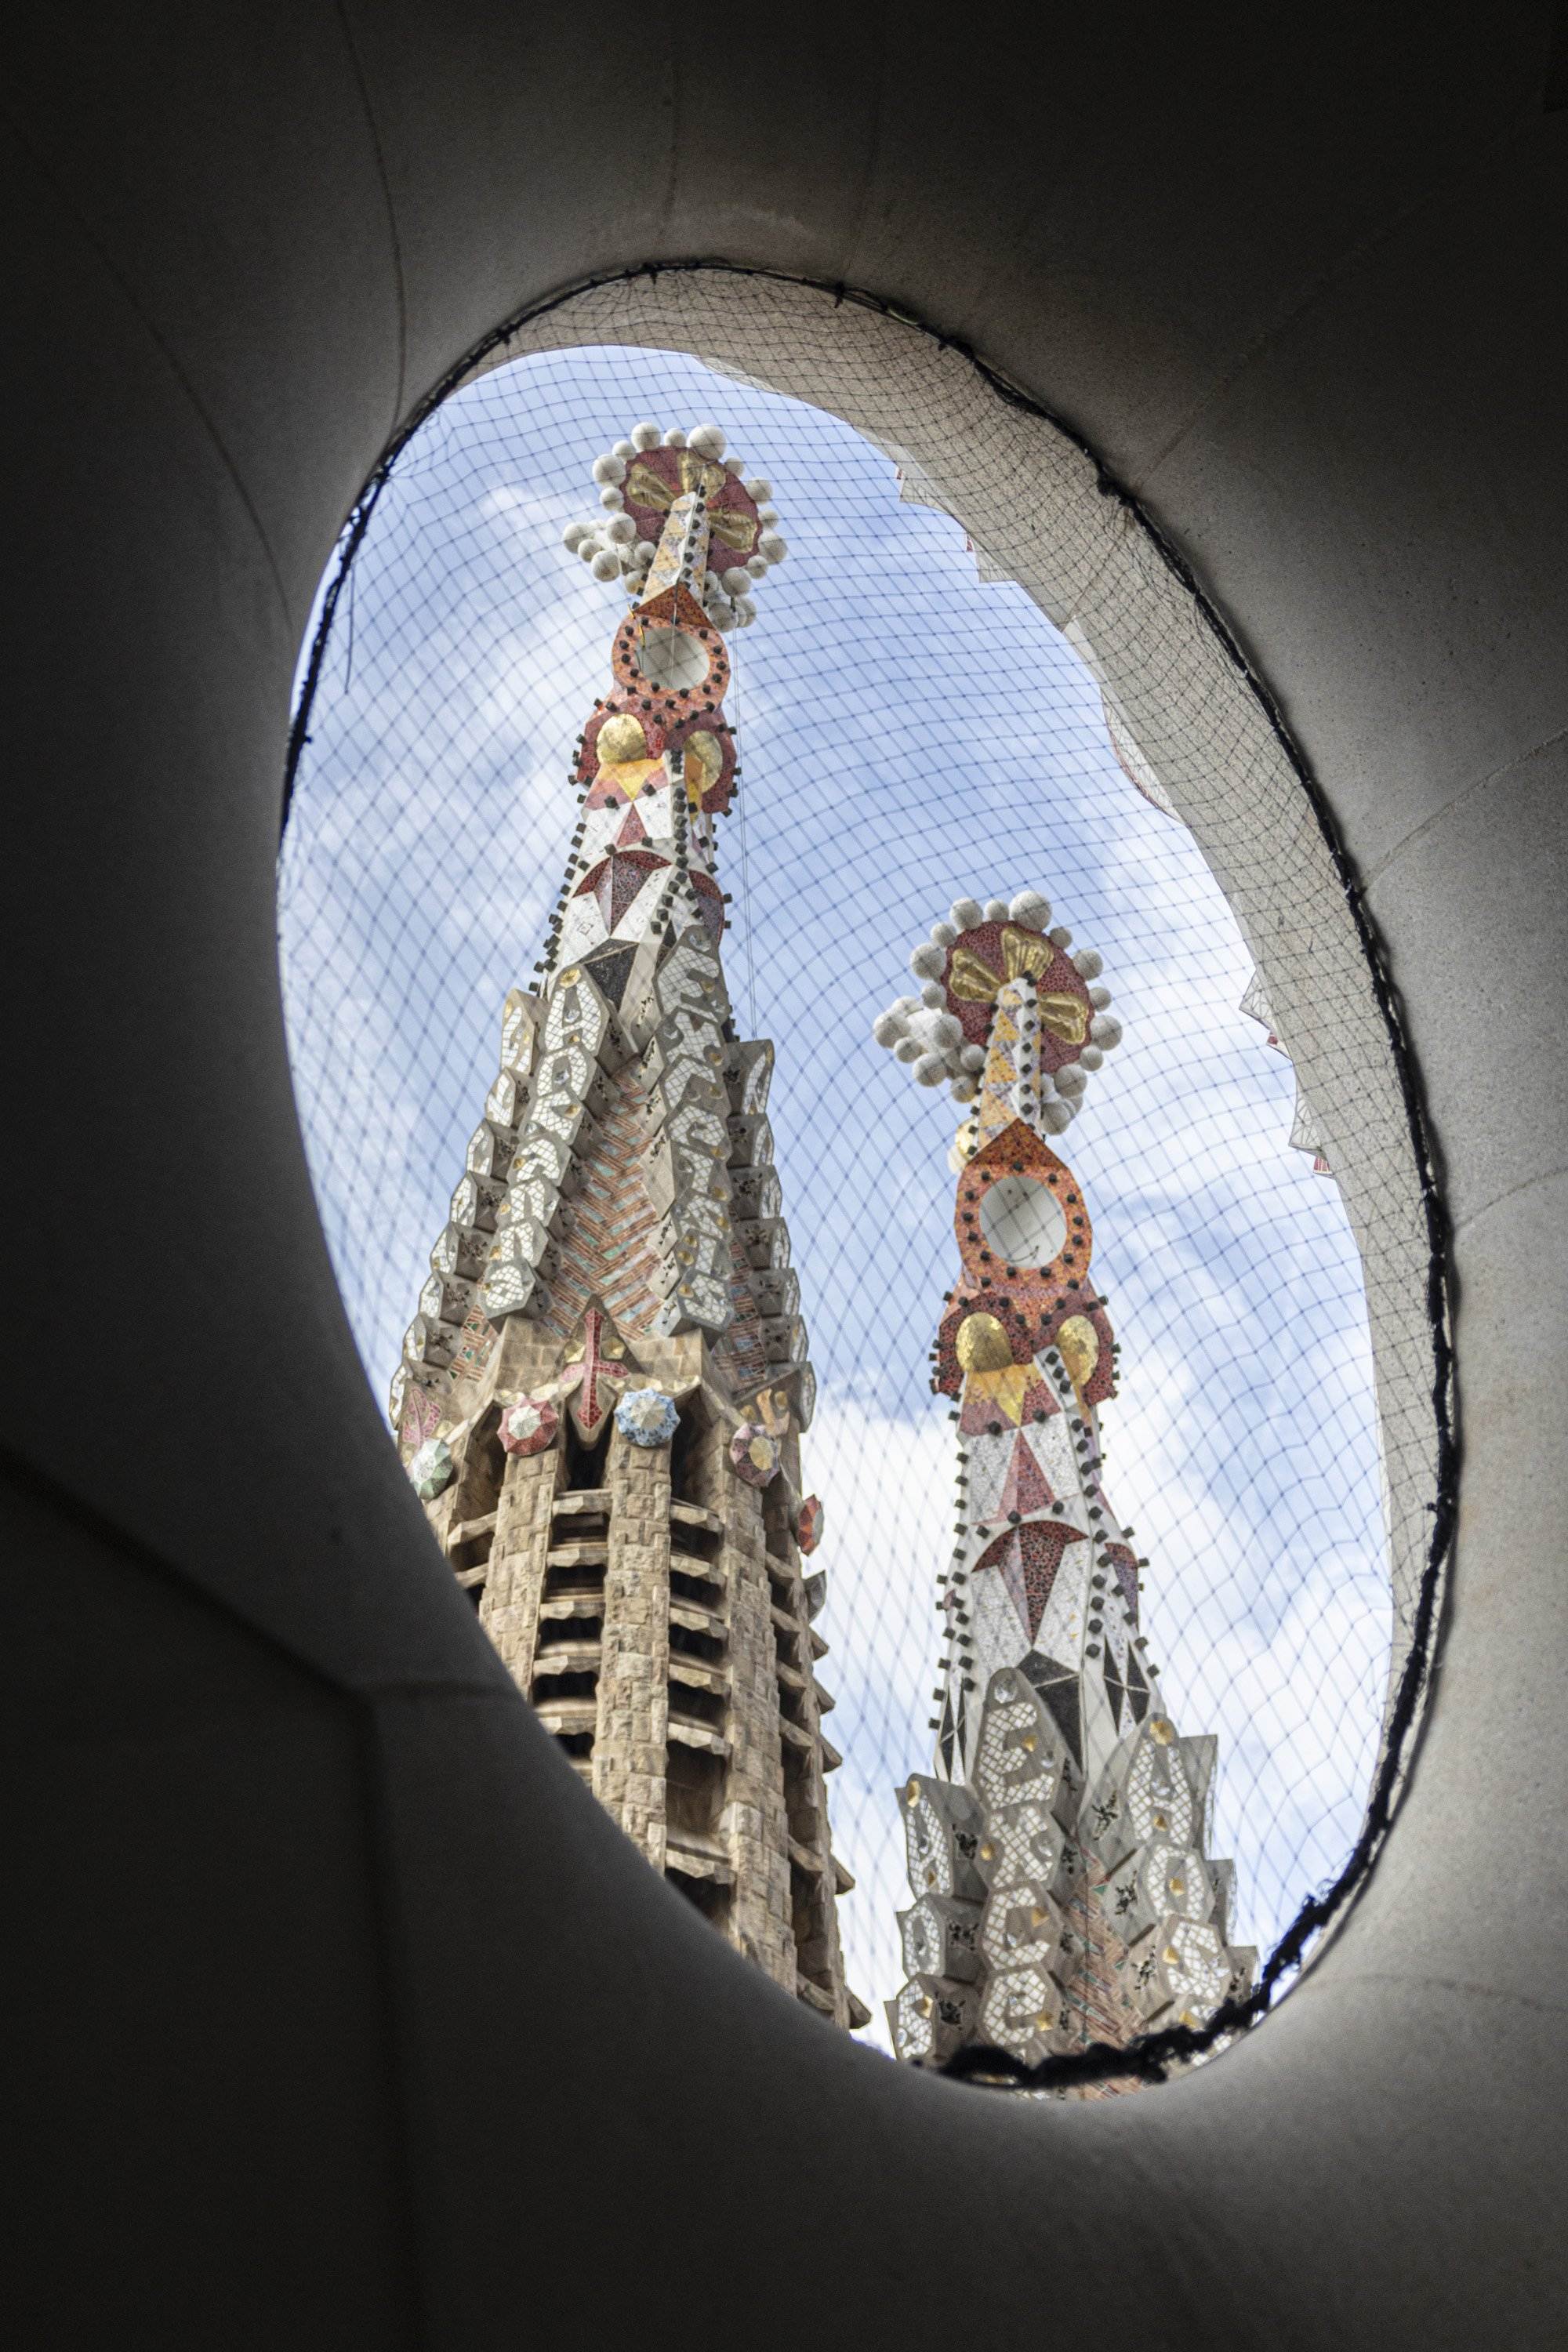 El 2026 serà l’Any Gaudí: Barcelona commemorarà el centenari de la mort de l’arquitecte